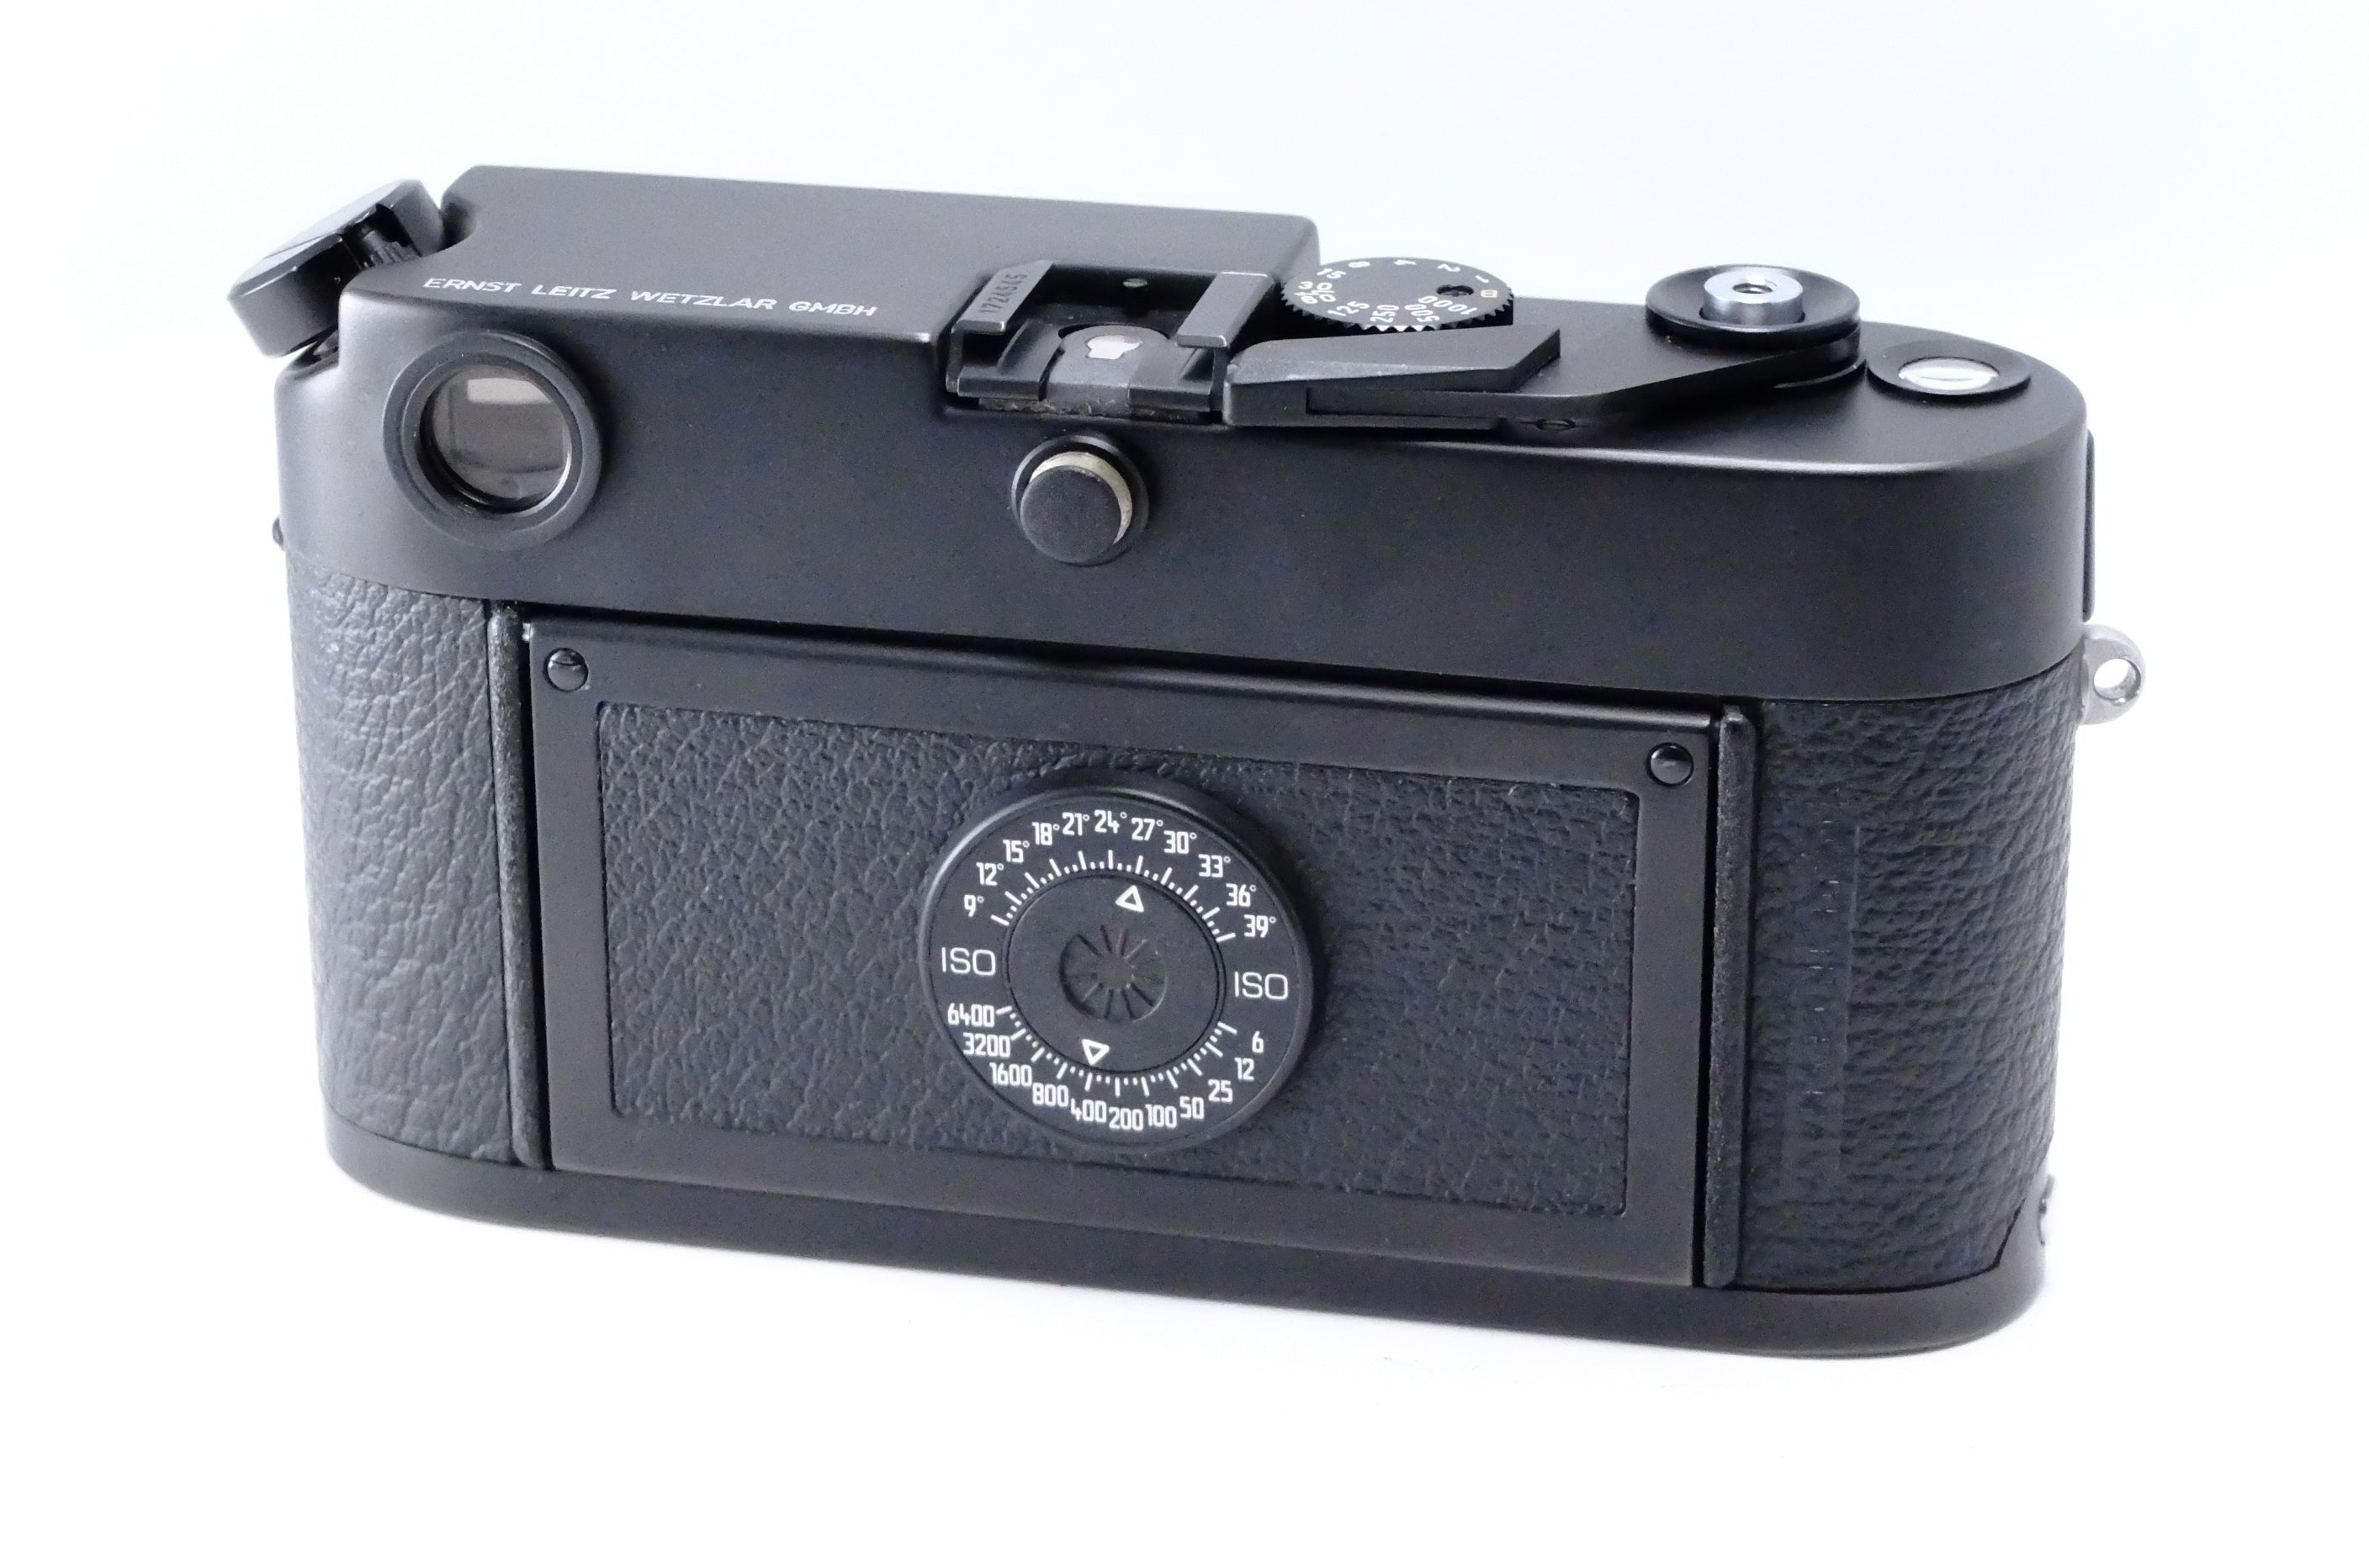 Leica】M6 (ブラック) LEITZ WETZLAR GMBH刻印 [1569001994759] – 東京 